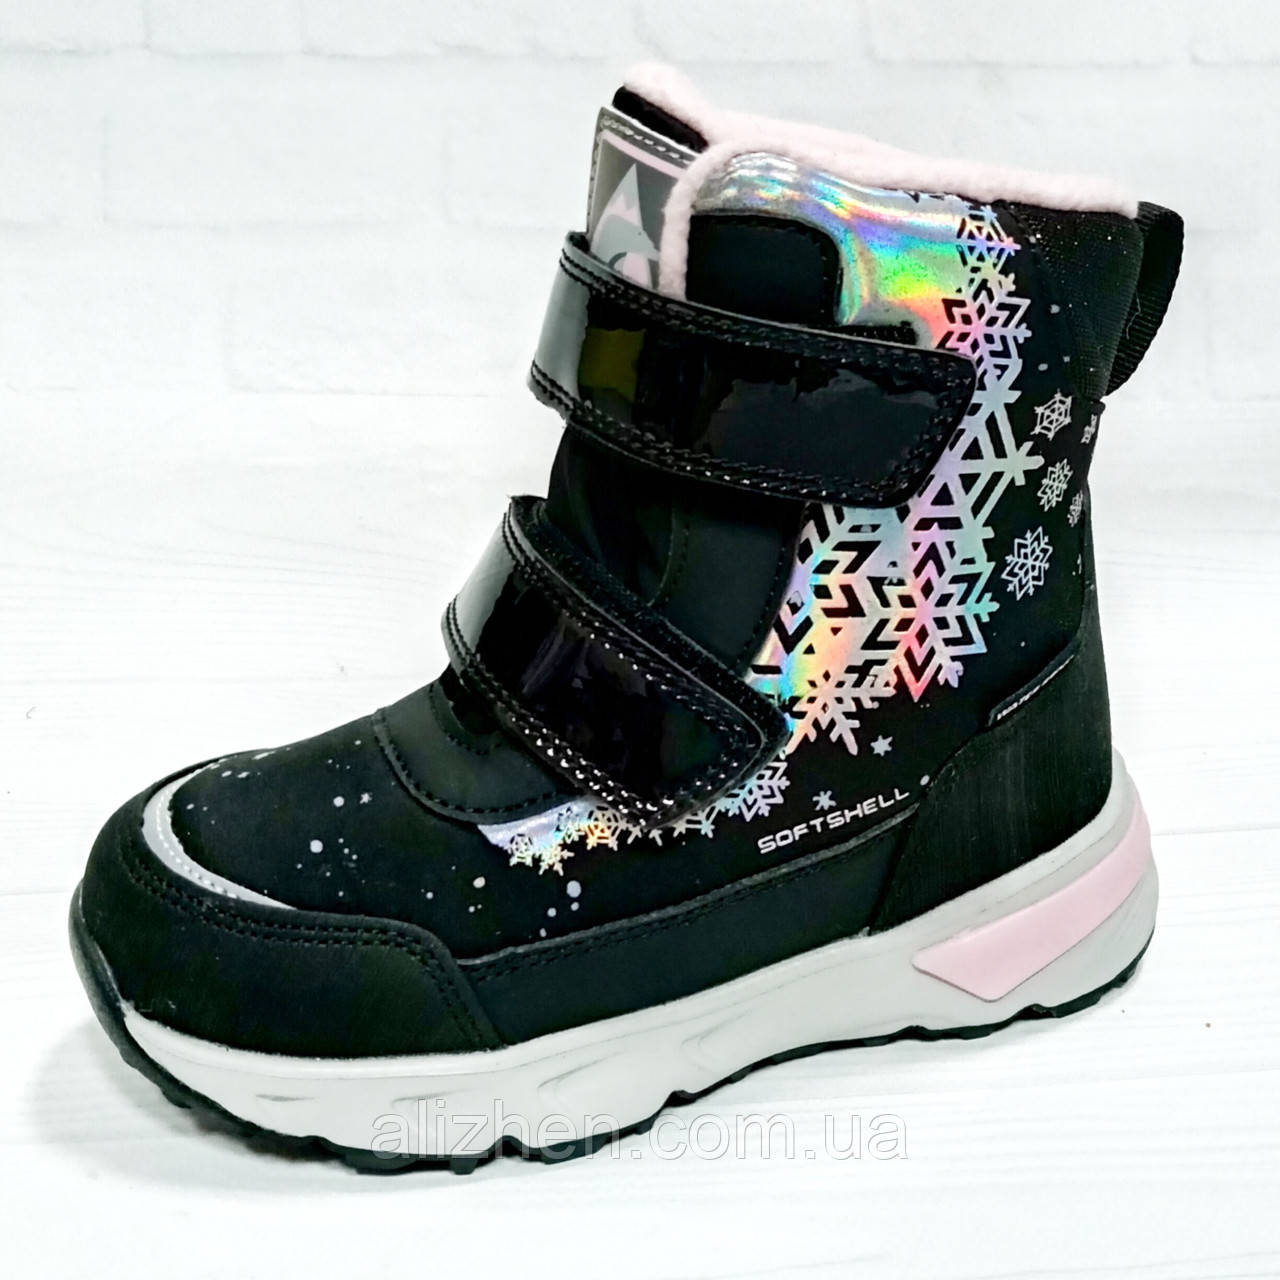 Дитячі зимові термочеревики, черевики для дівчинки тм B&G розміри 28 - 33, чорні..